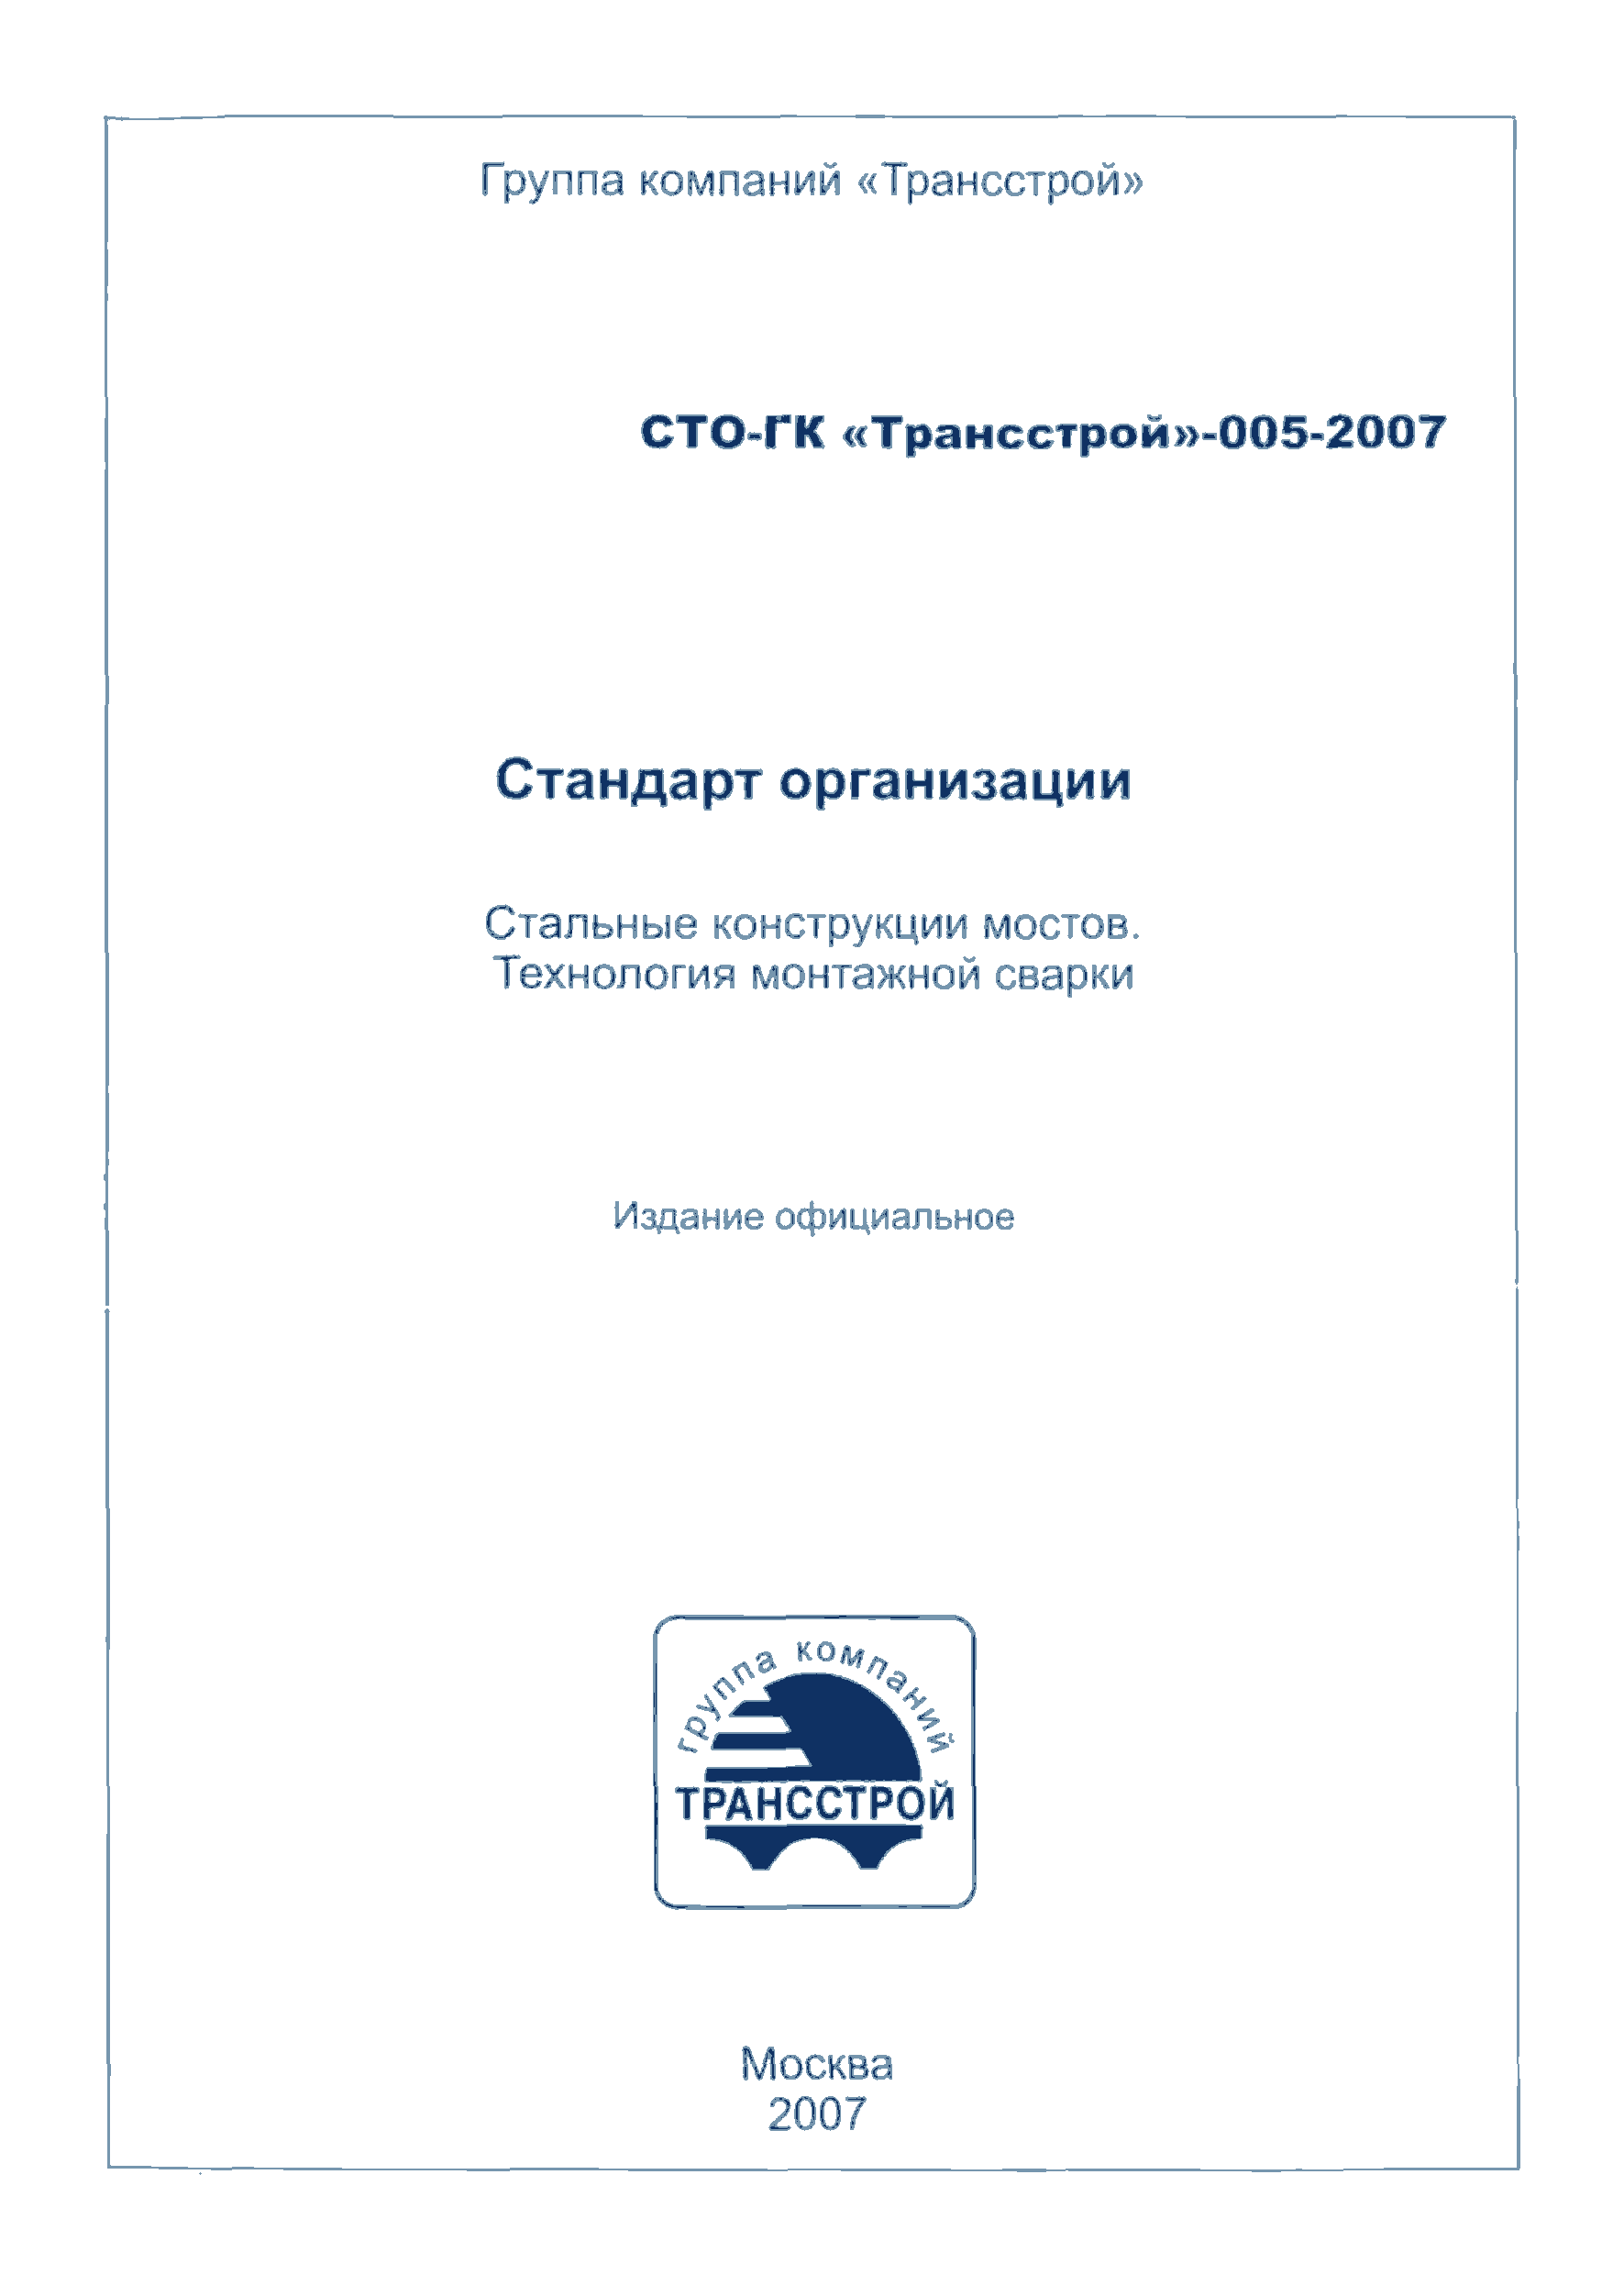 СТО-ГК "Трансстрой" 005-2007